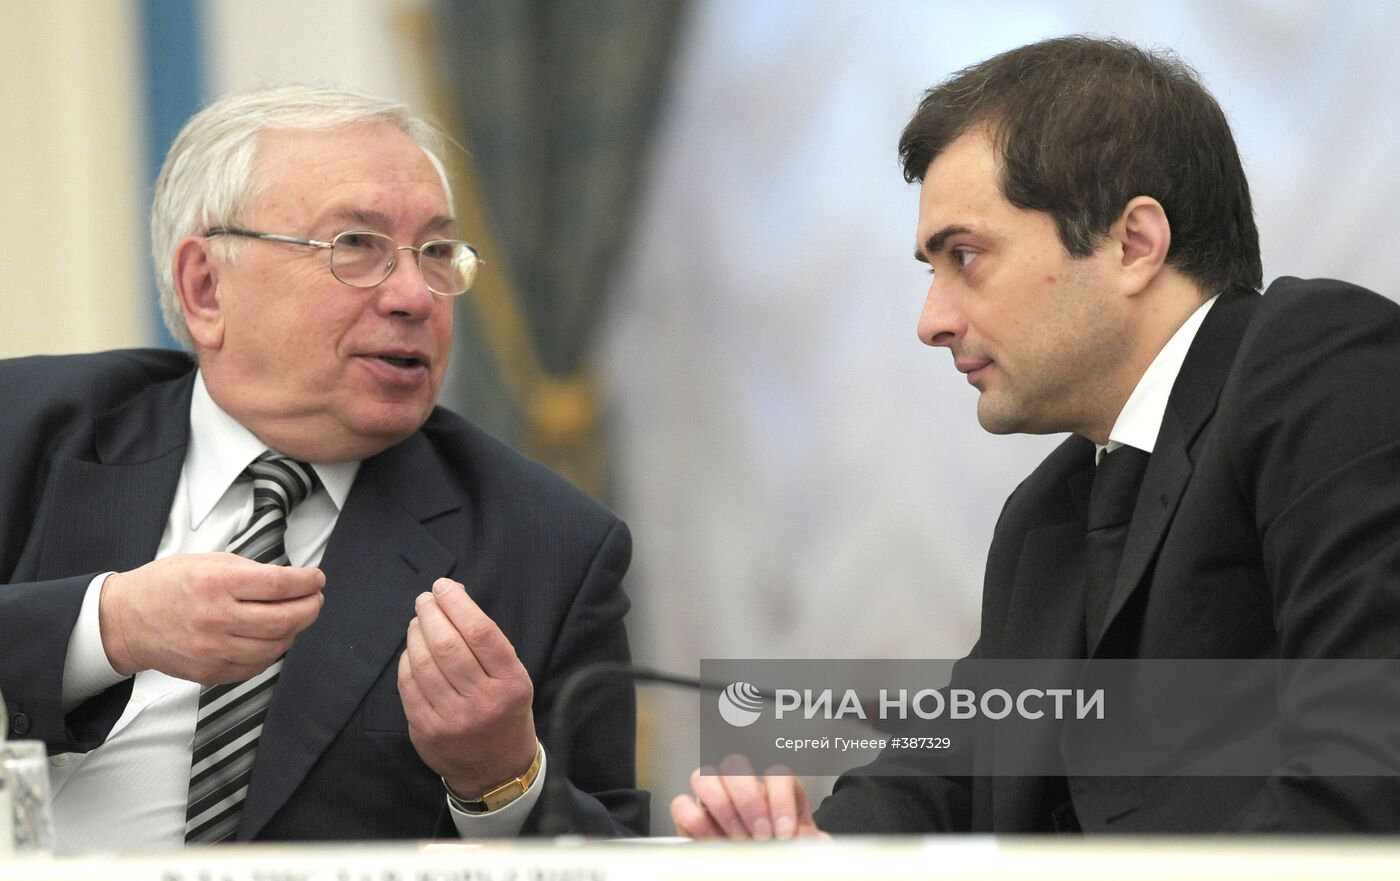 Д.Медведев провел заседание Совета по правам человека